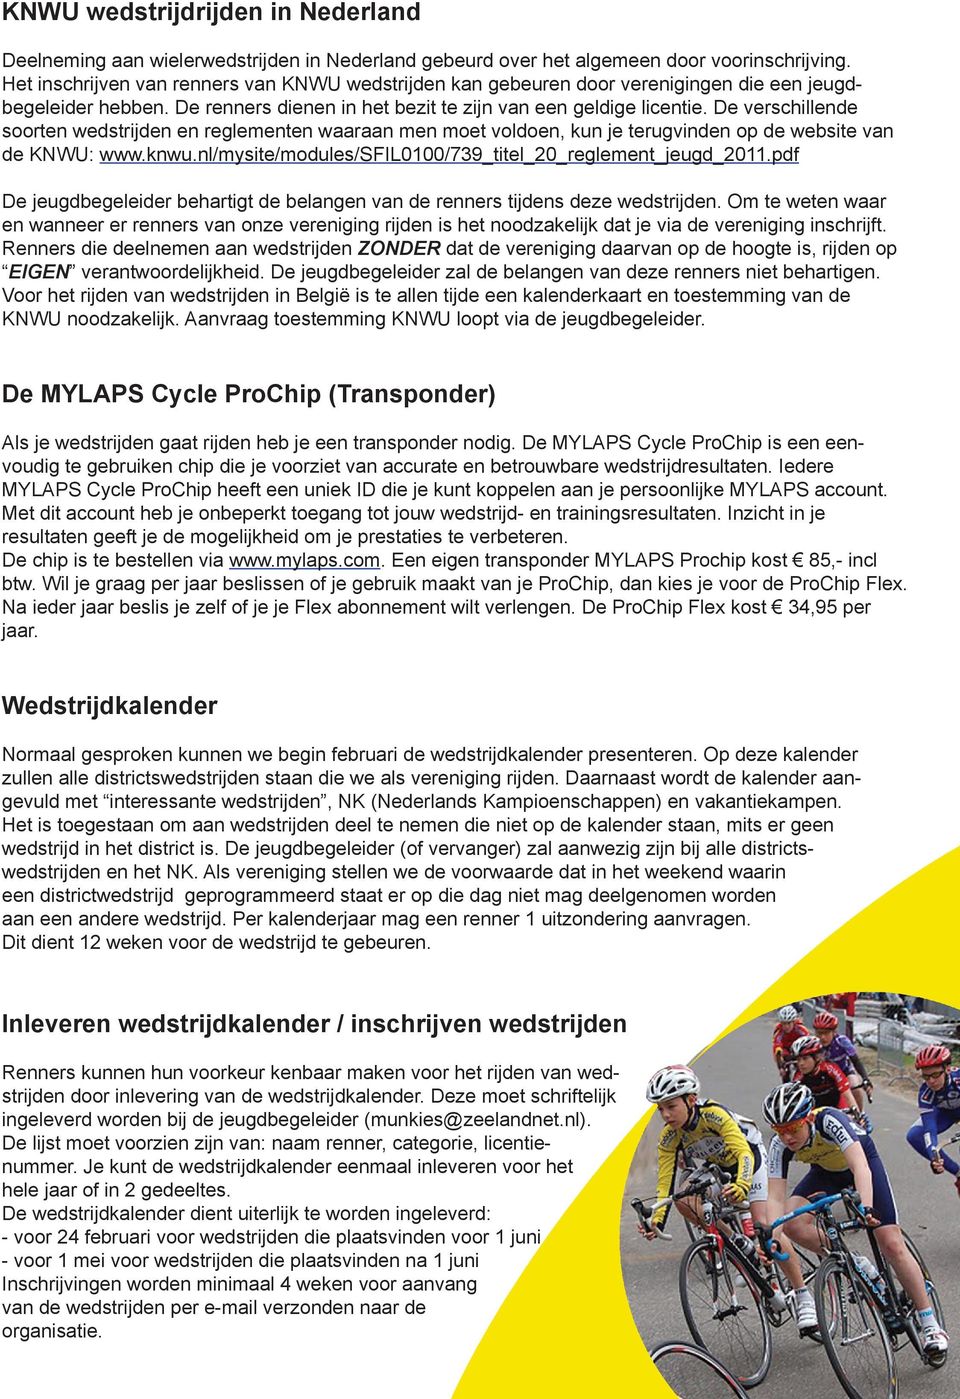 De verschillende soorten wedstrijden en reglementen waaraan men moet voldoen, kun je terugvinden op de website van de KNWU: www.knwu.nl/mysite/modules/sfil0100/739_titel_20_reglement_jeugd_2011.